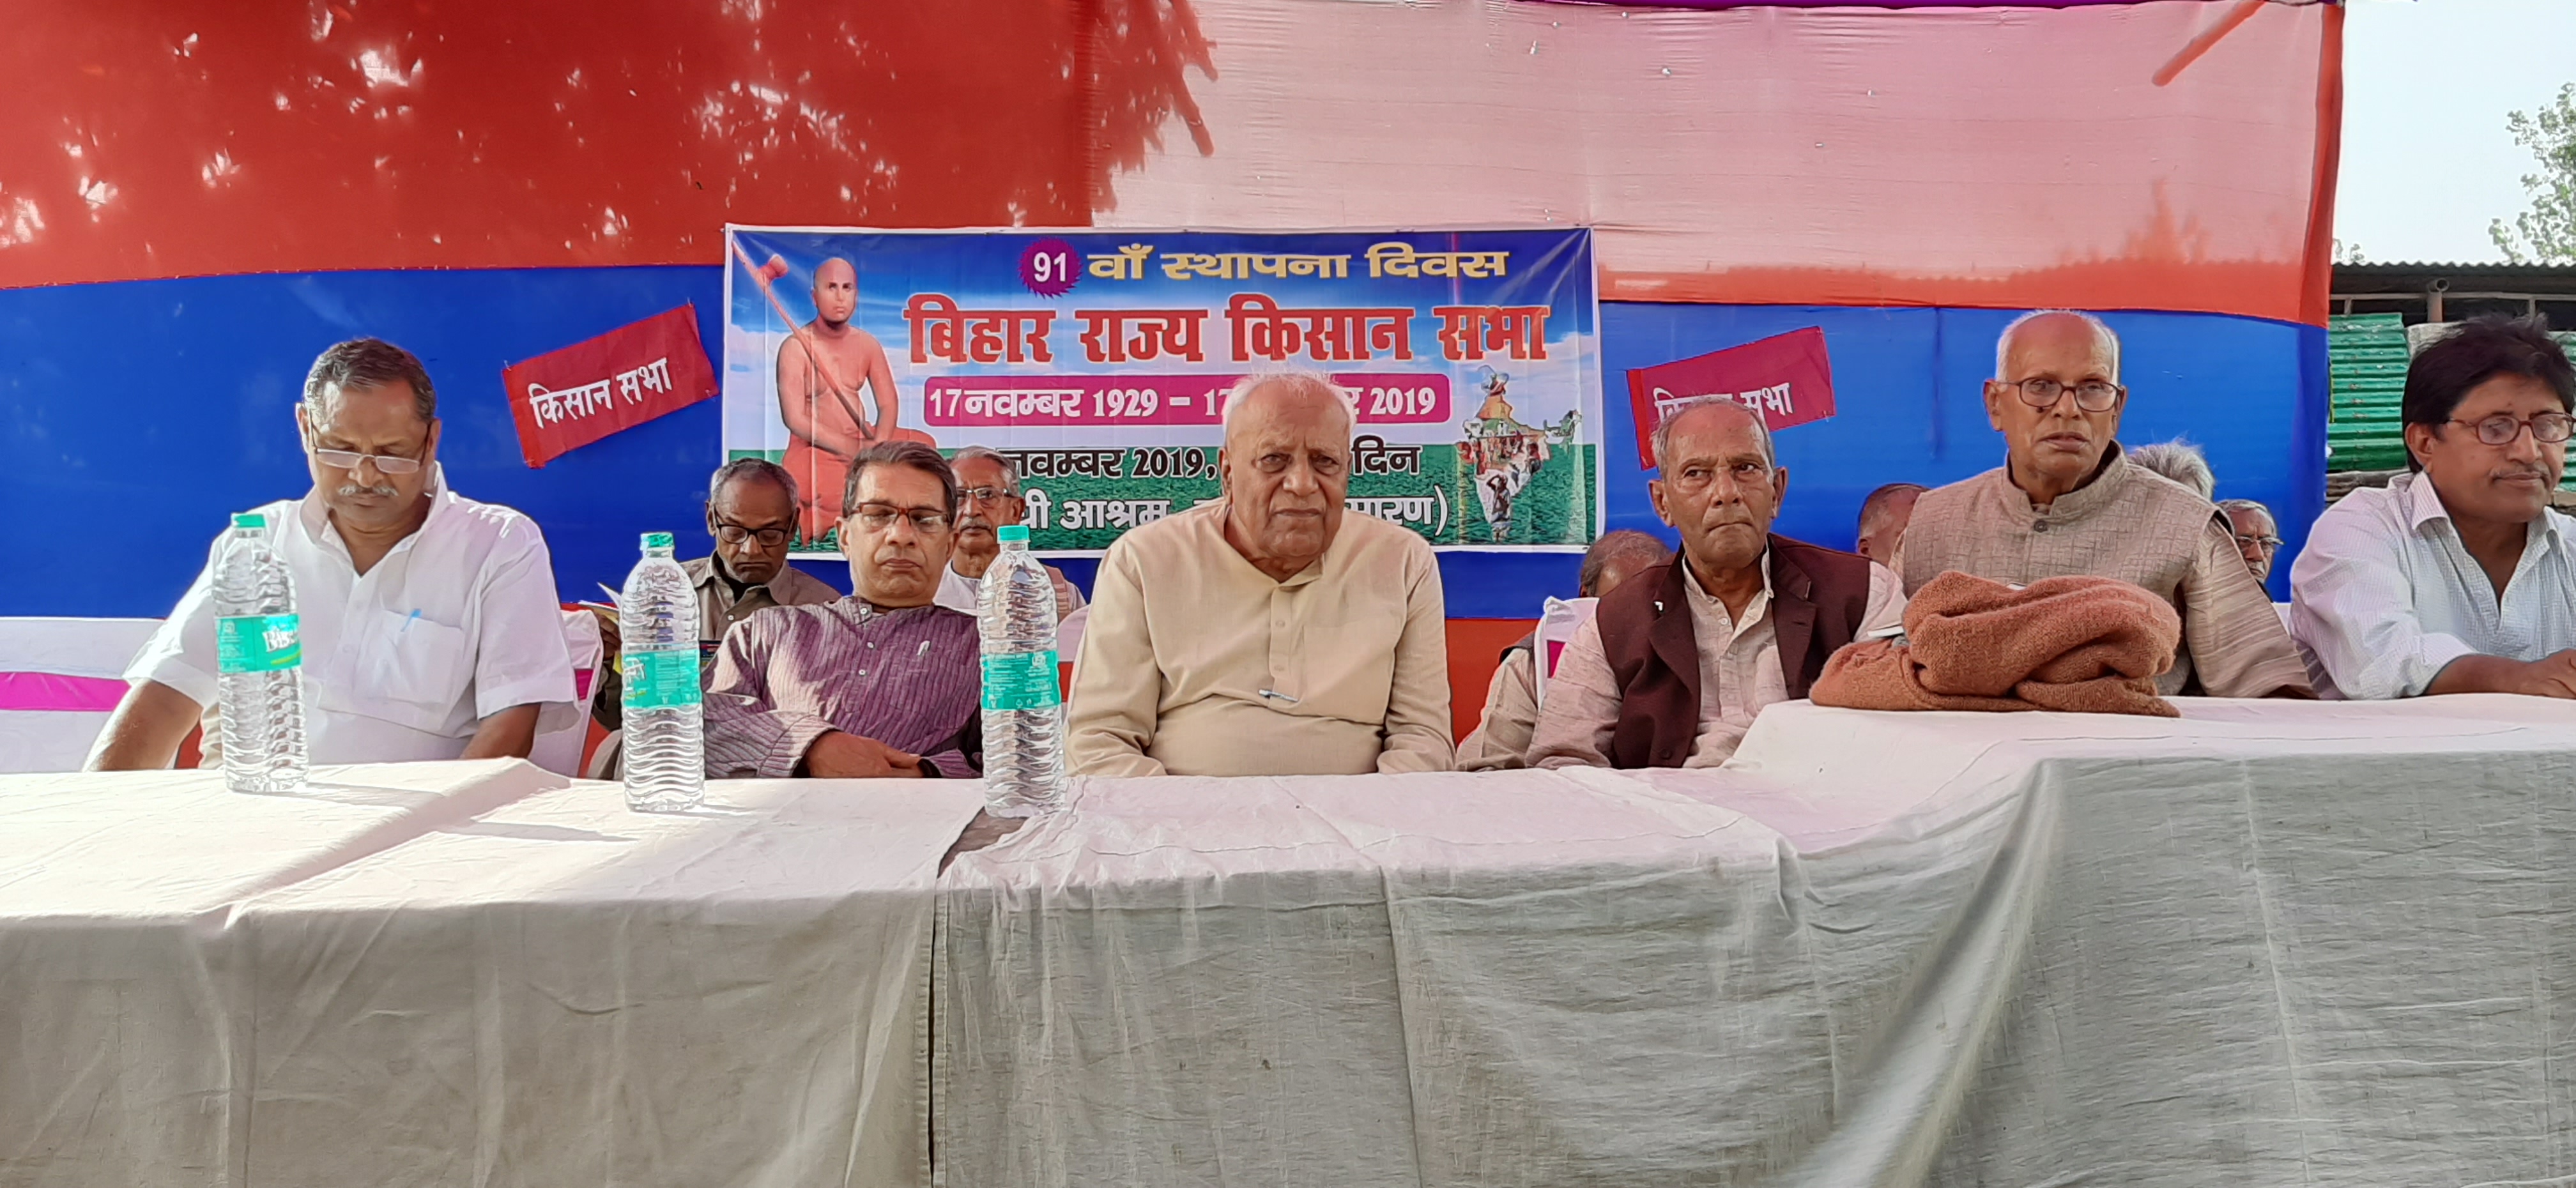 सोनपुर-बिहार राज्य किसान सभा का 91वां स्थापना दिवस समारोह समपन्न,याद किए गए स्वामी सहजानंद सरस्वती-